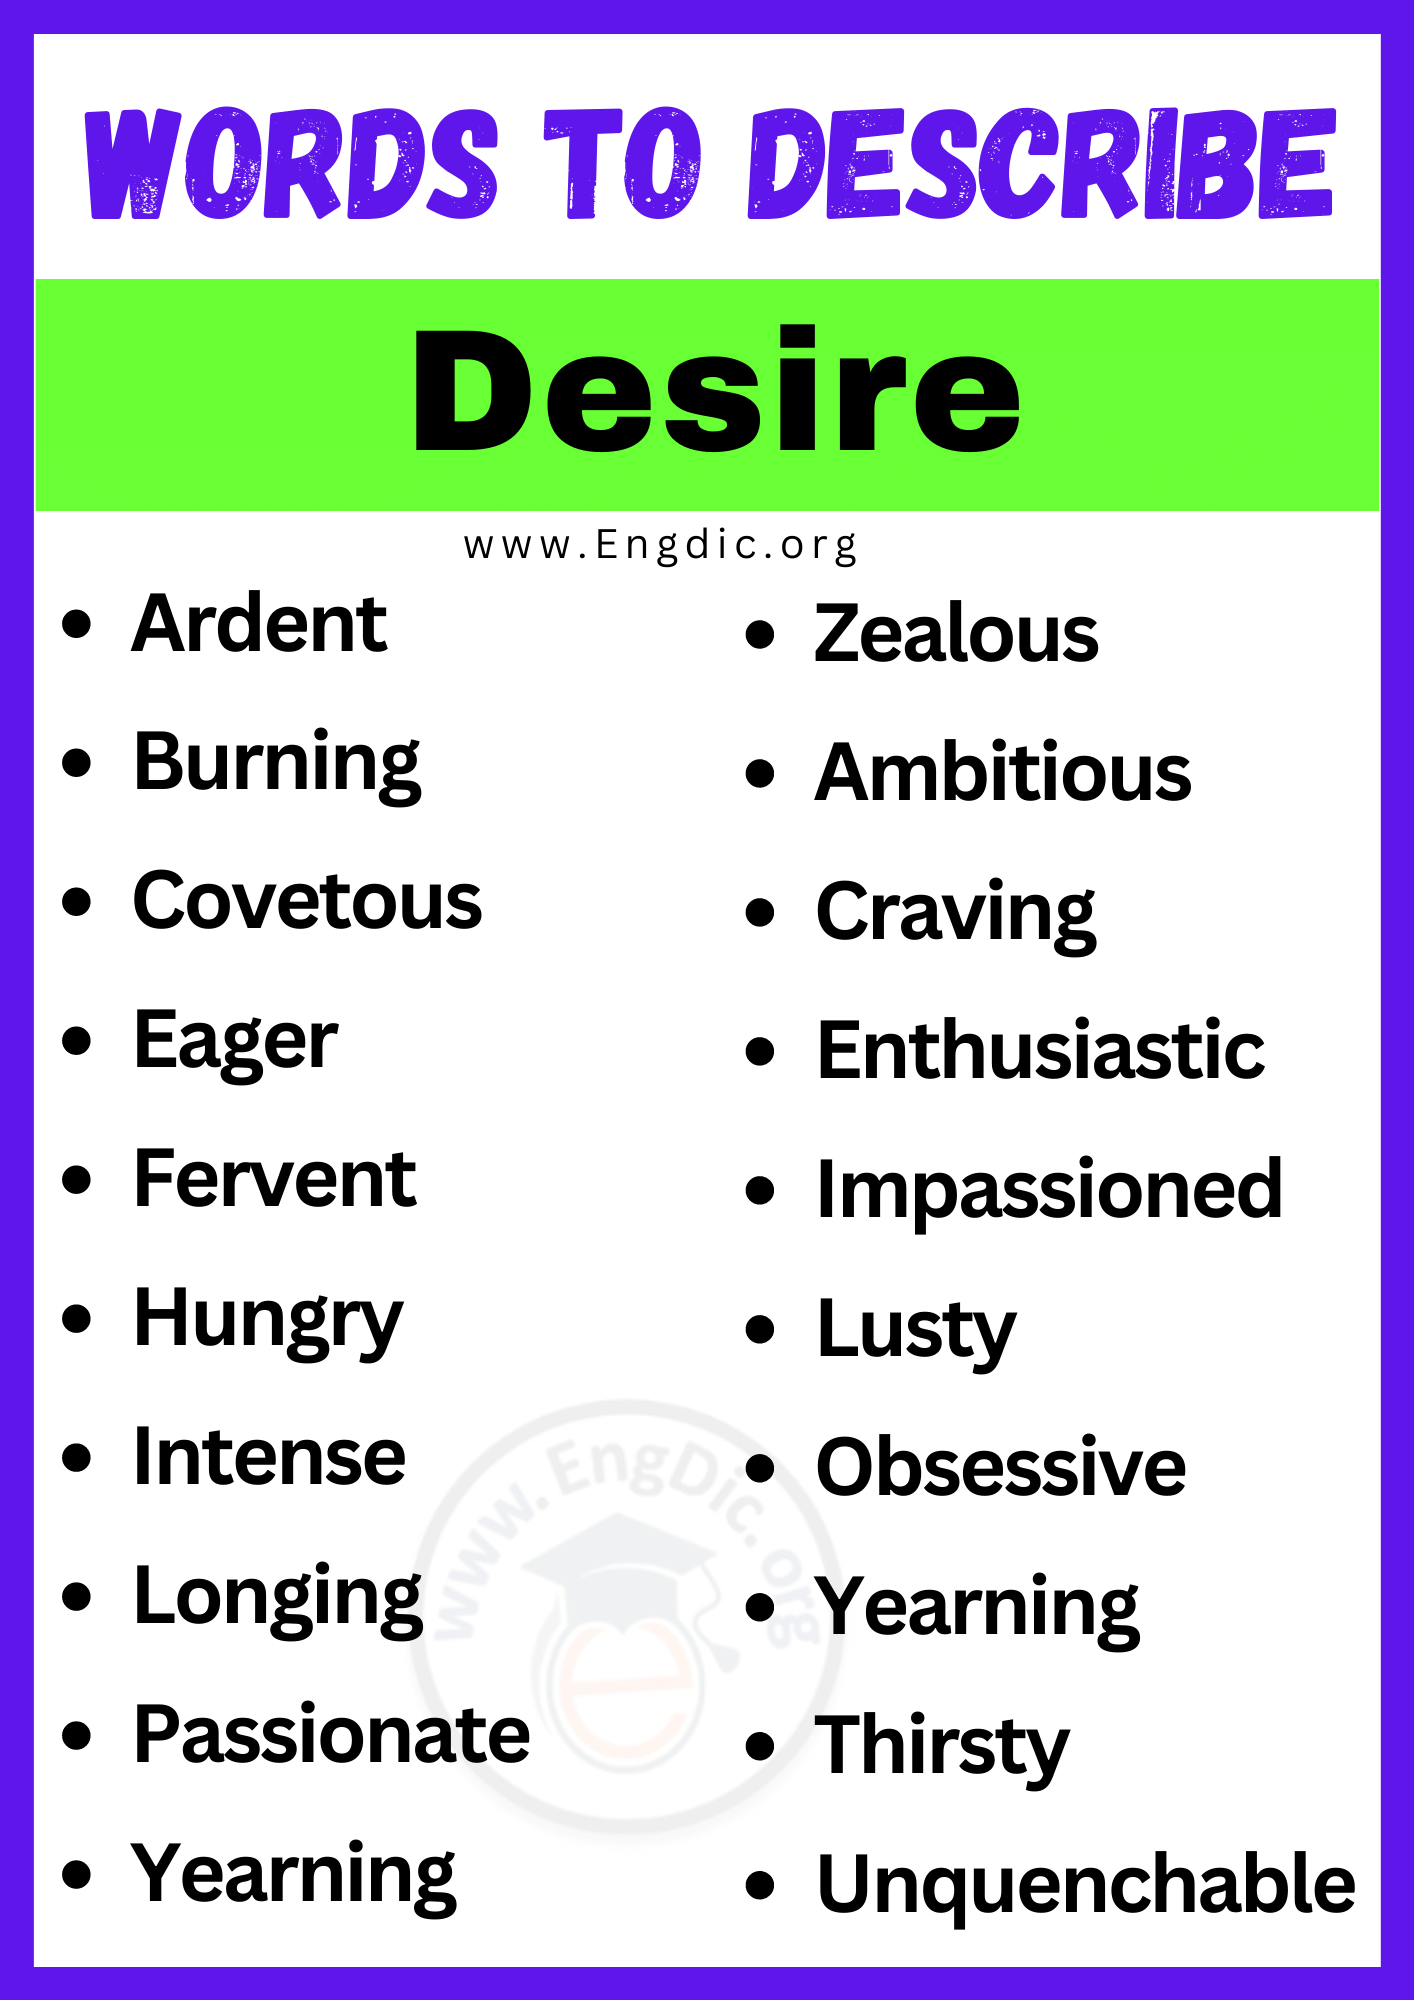 Words to Describe Desire